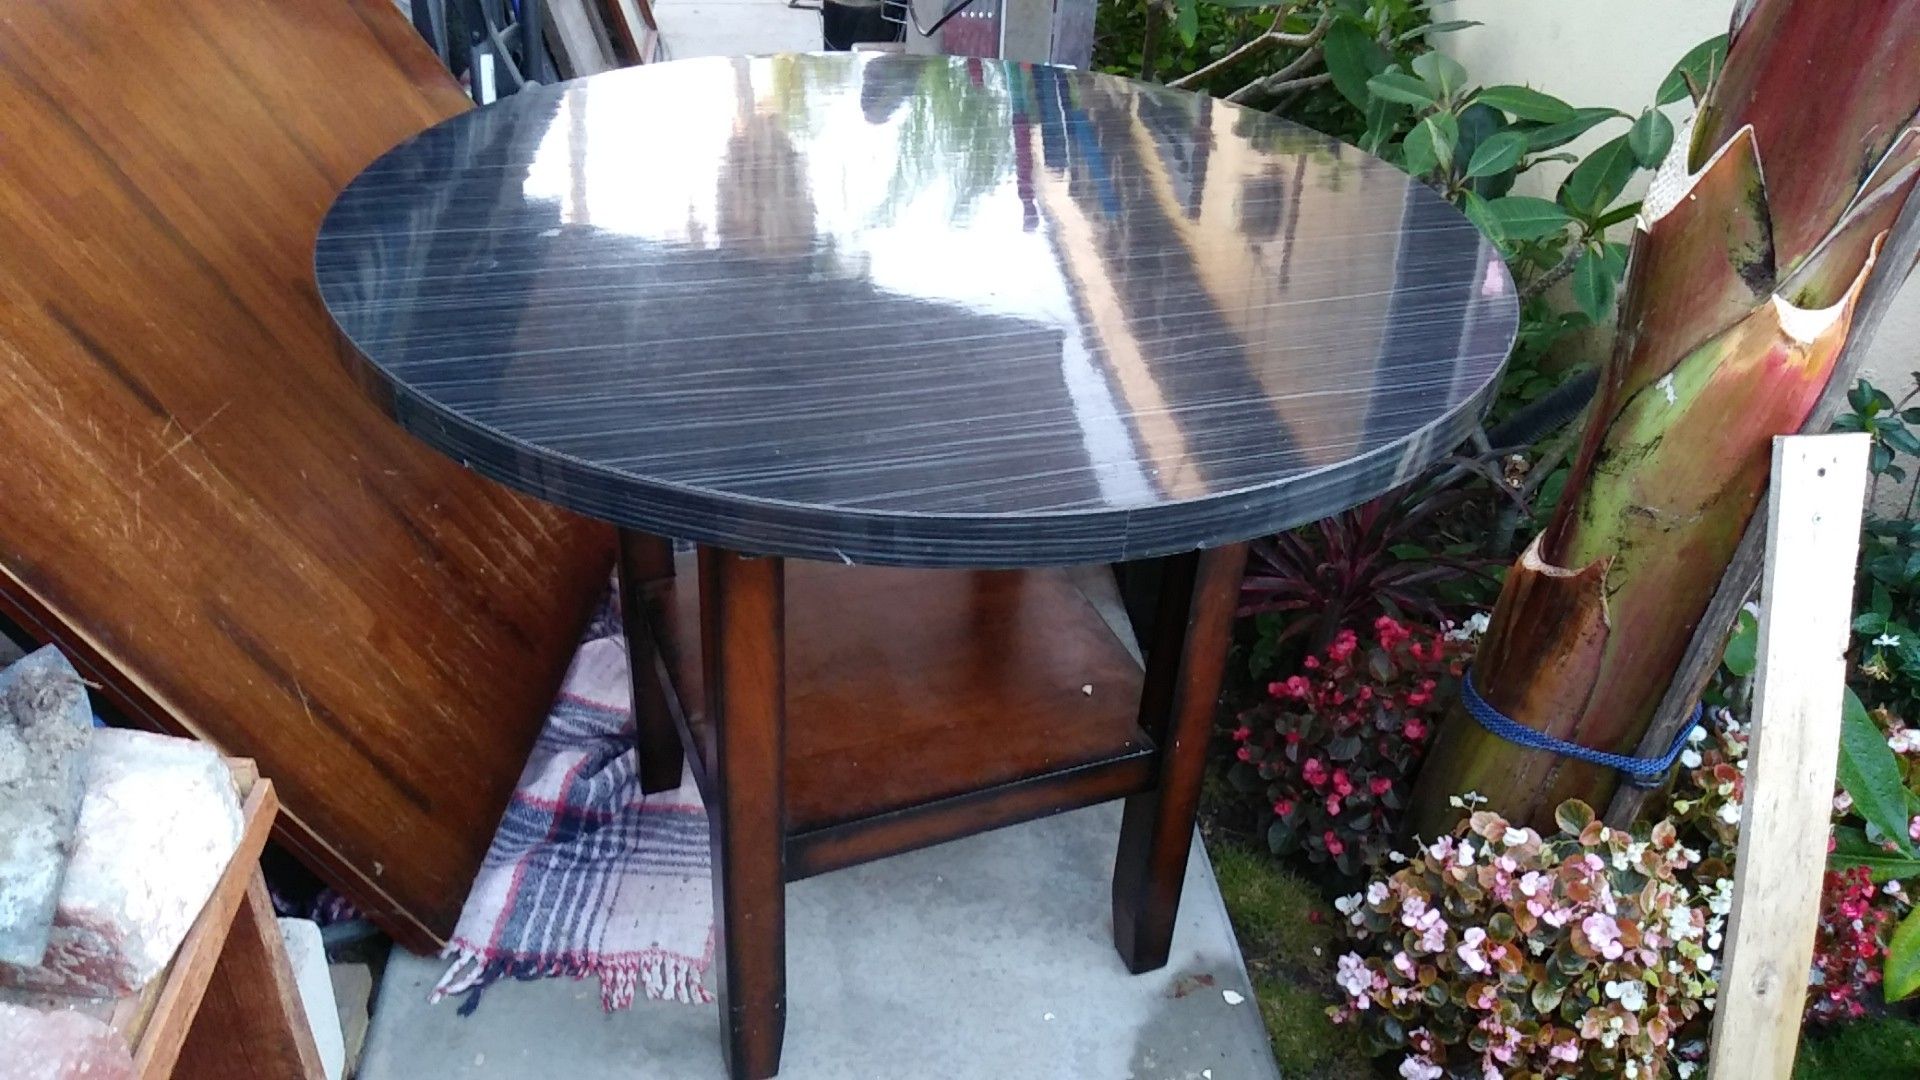 Small table 38"×38" round black&gray. Shiny finish